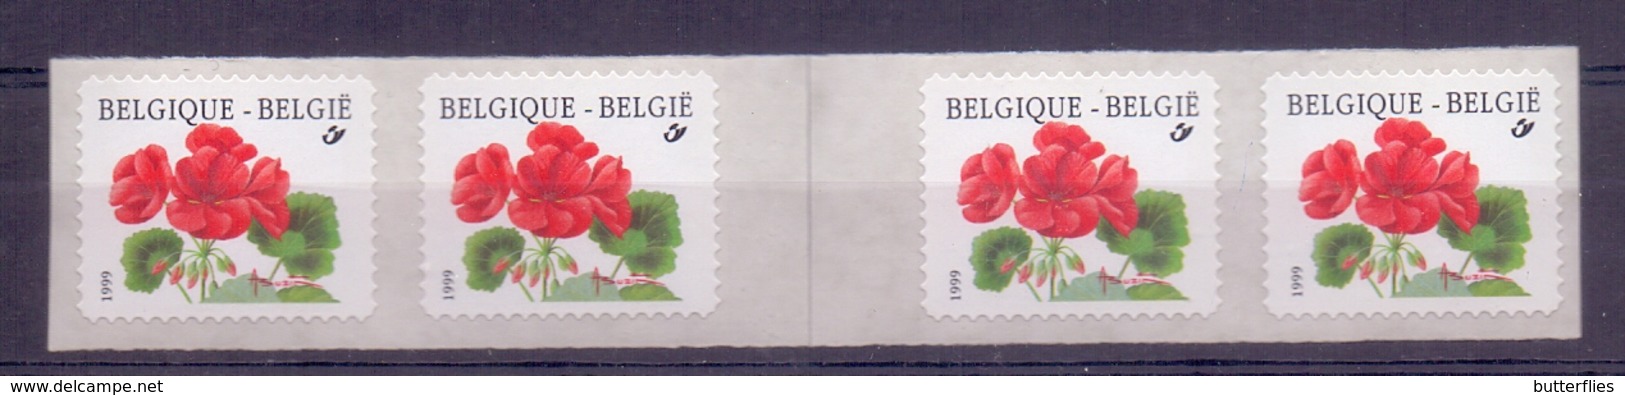 Belgie - ^ 1999 - OBP - ** 2854 -  Rolzegel 91 - Strook Met Grote Spatie - Geranium -  Bloemen -  Andre Buzin - Coil Stamps